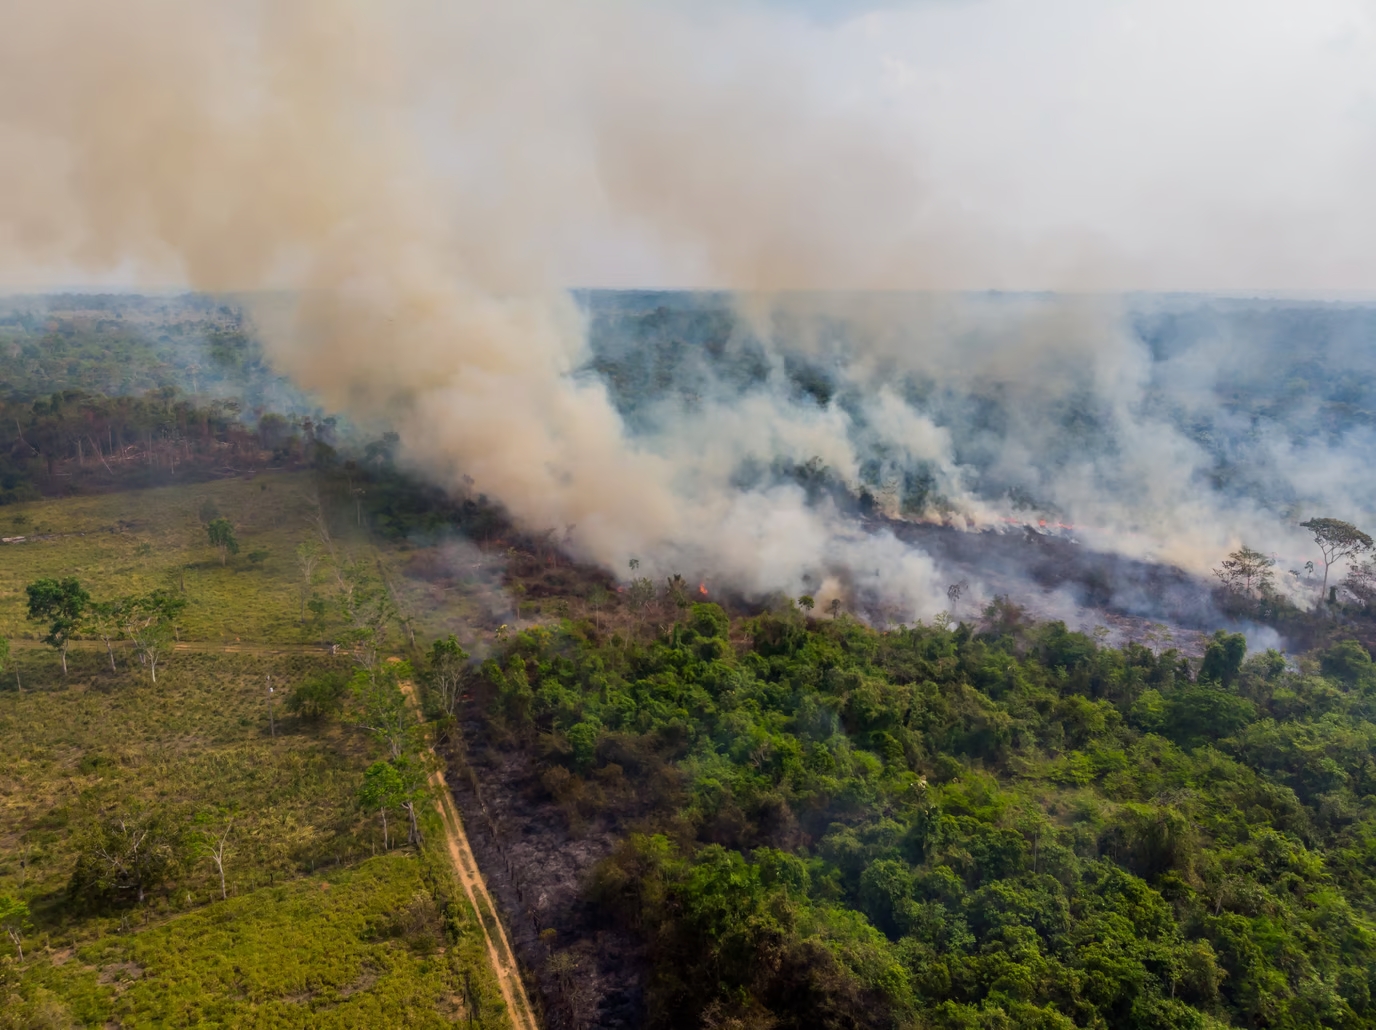 agropecuária: imagem de uma floresta em chamas